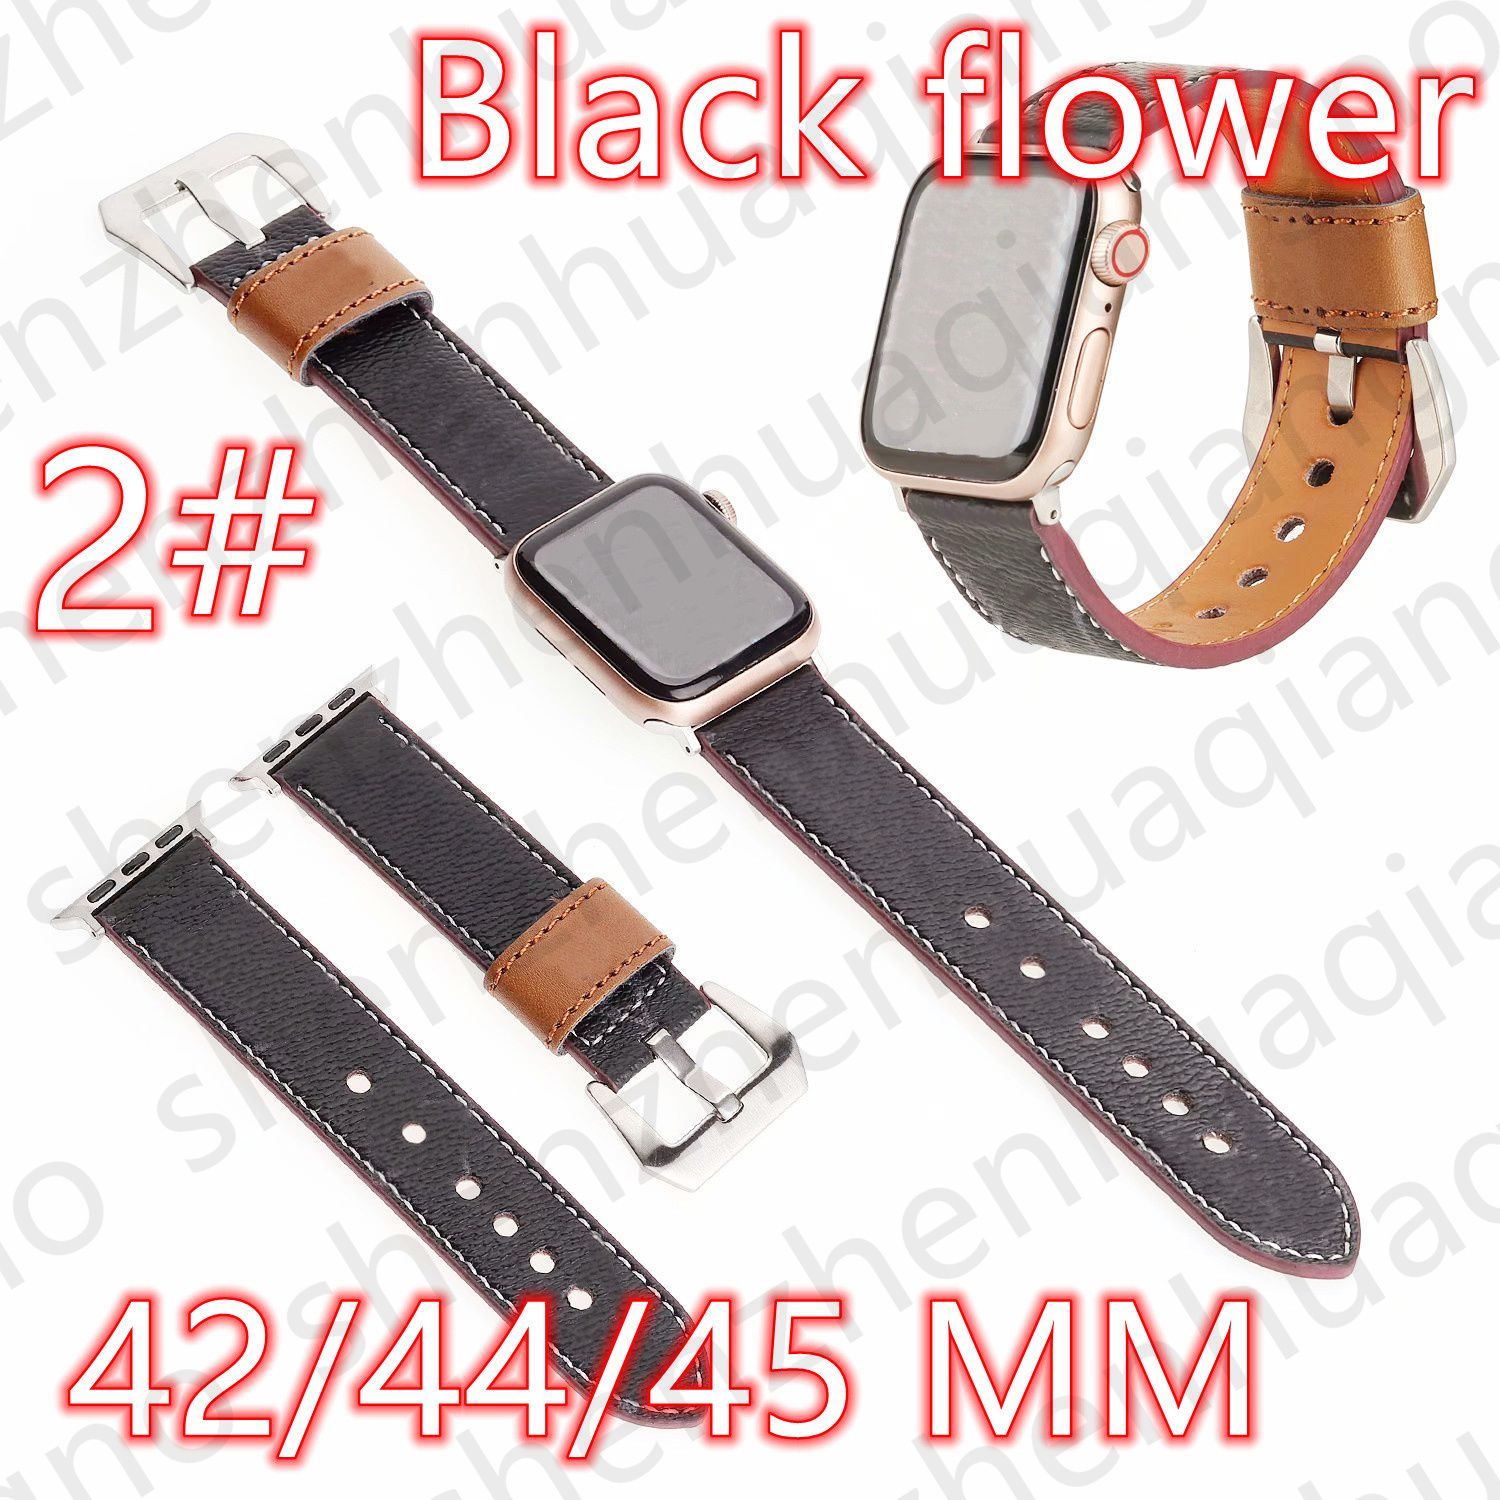 2#42/44/45/49 mm Black Flower V Logo